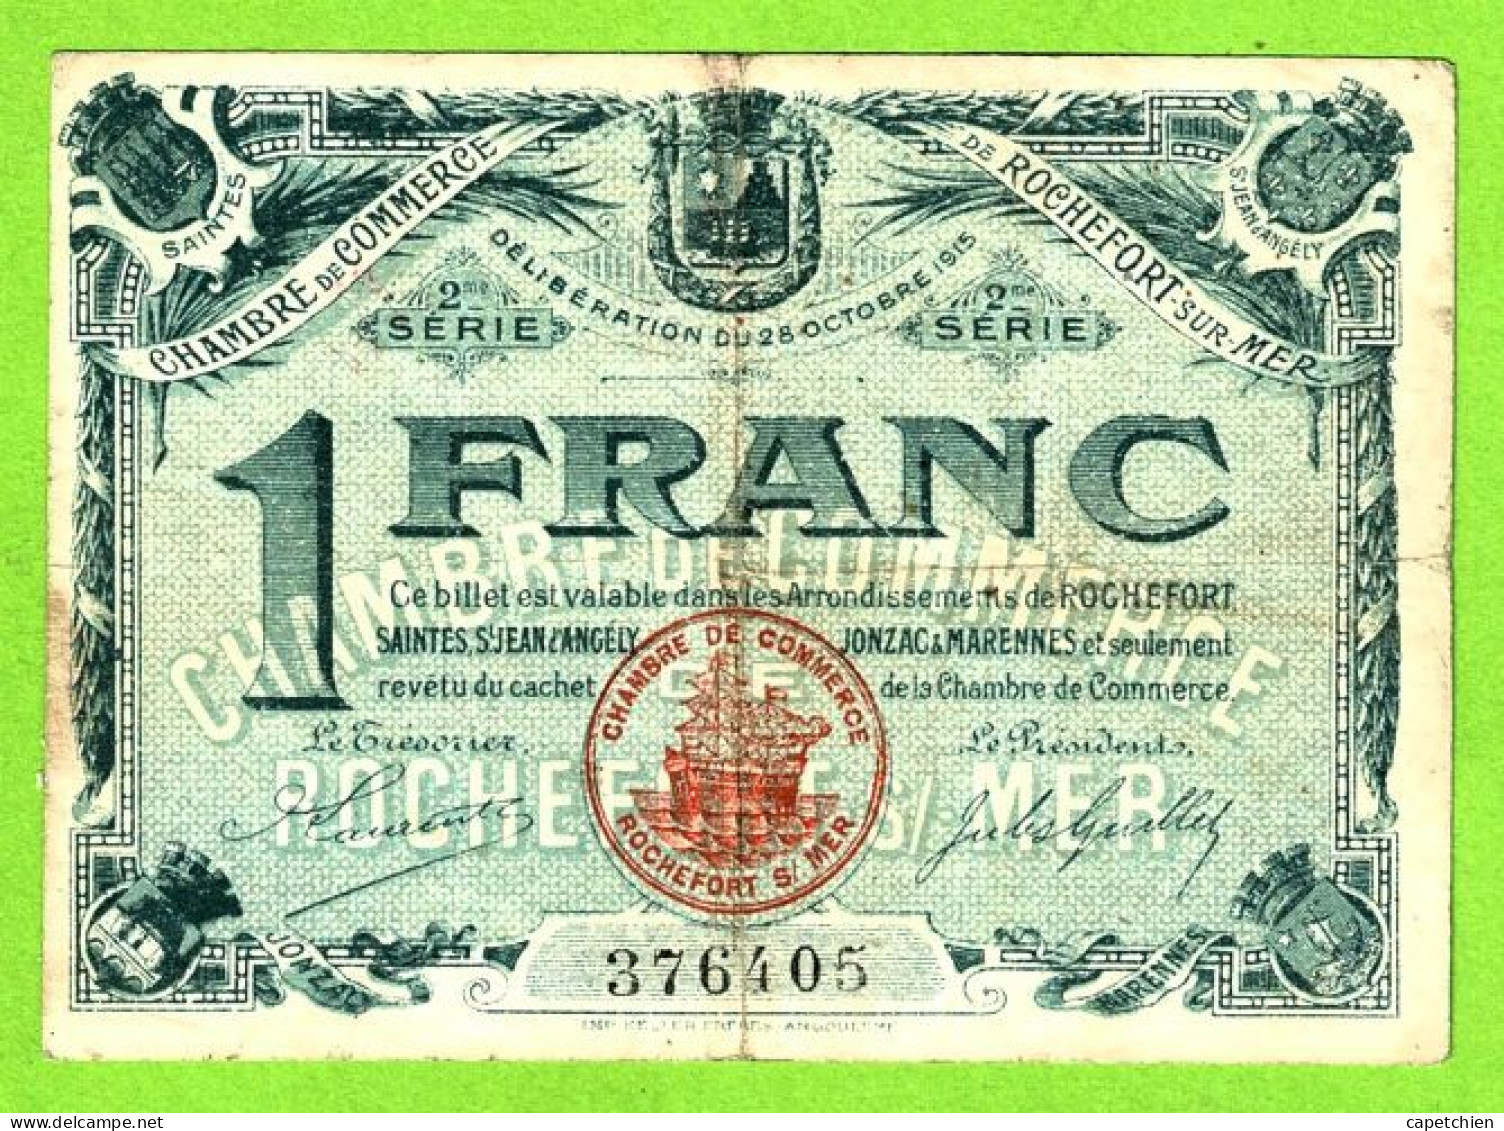 FRANCE/ CHAMBRE De COMMERCE De ROCHEFORT Sur MER/ 1 FRANC / 28 OCTOBRE 1915 / 299877 / 2 Eme SERIE - Chambre De Commerce